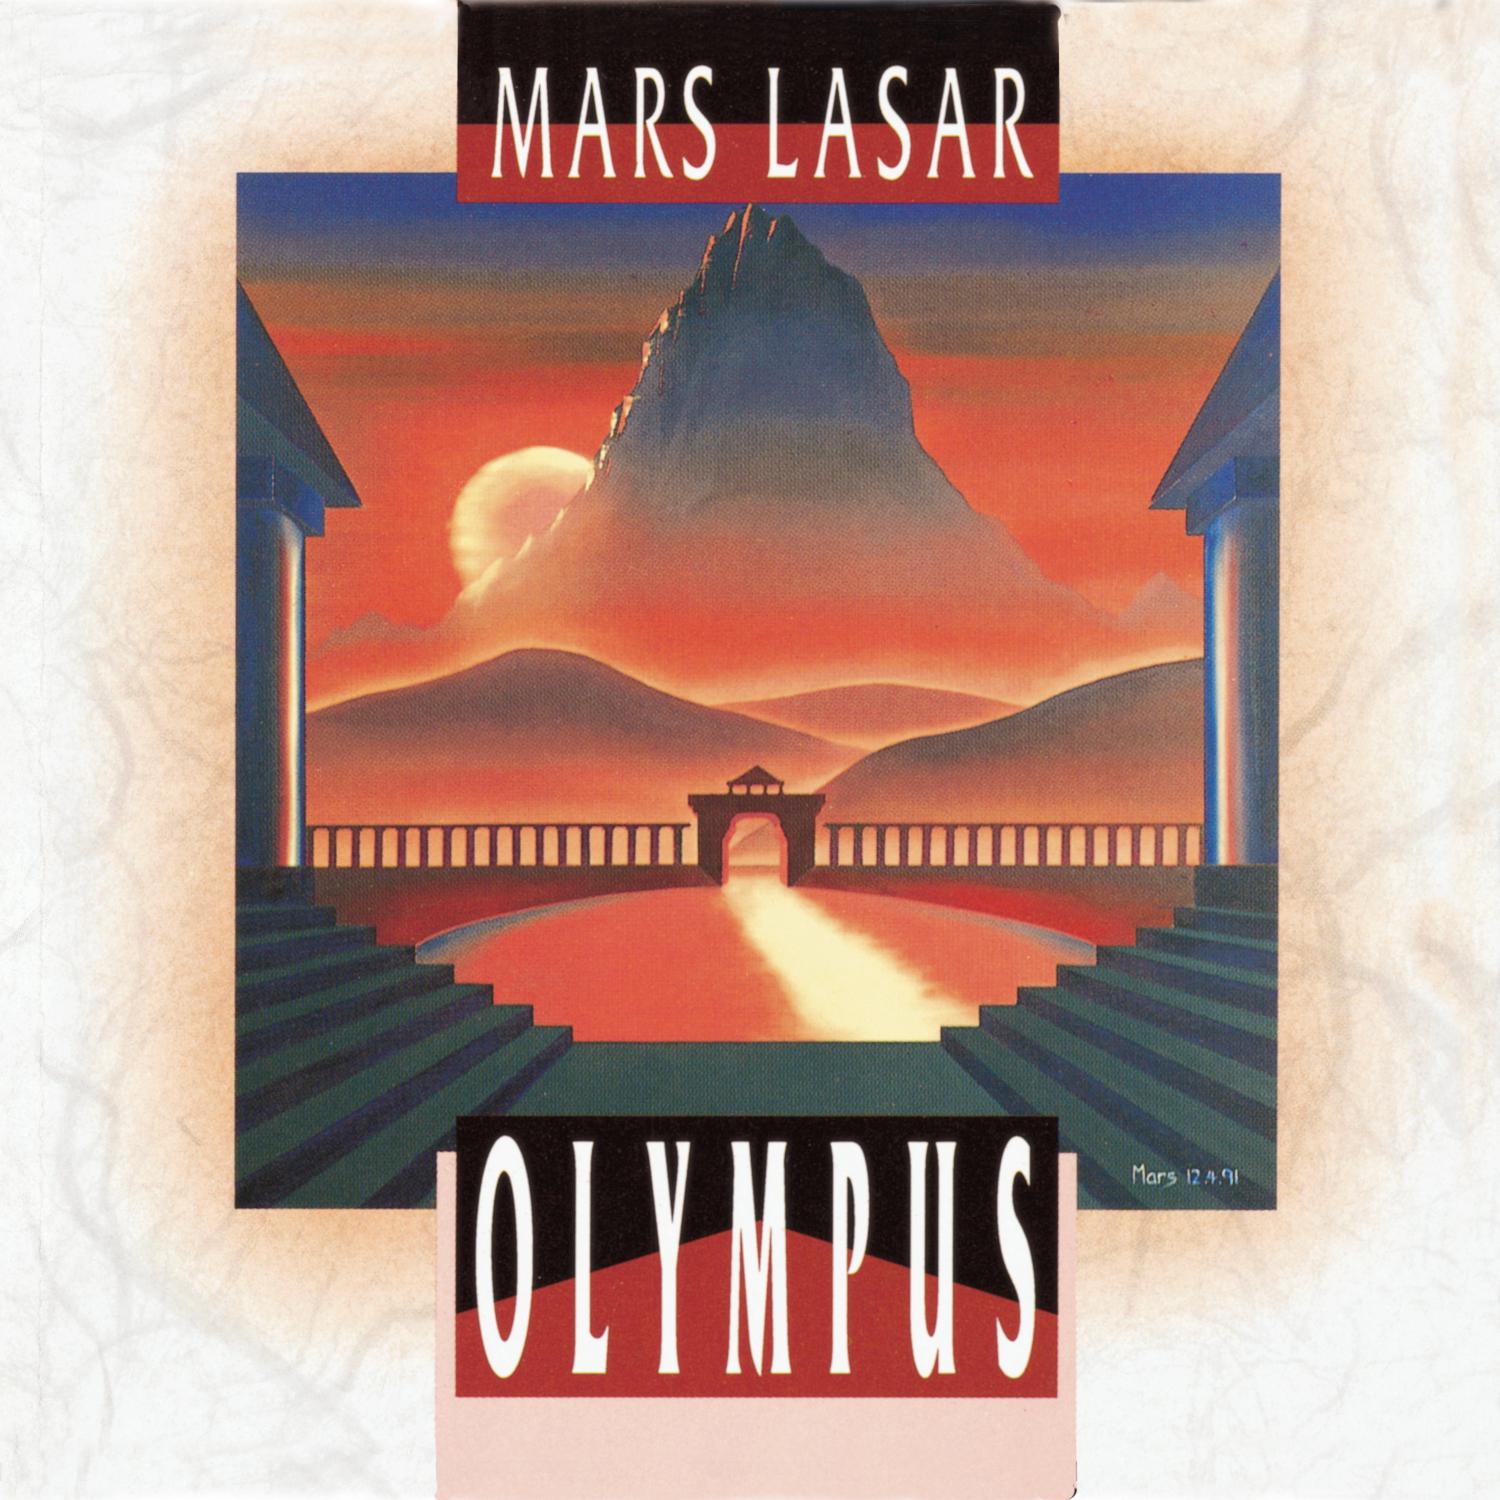 Mars Lasar - Hourglass